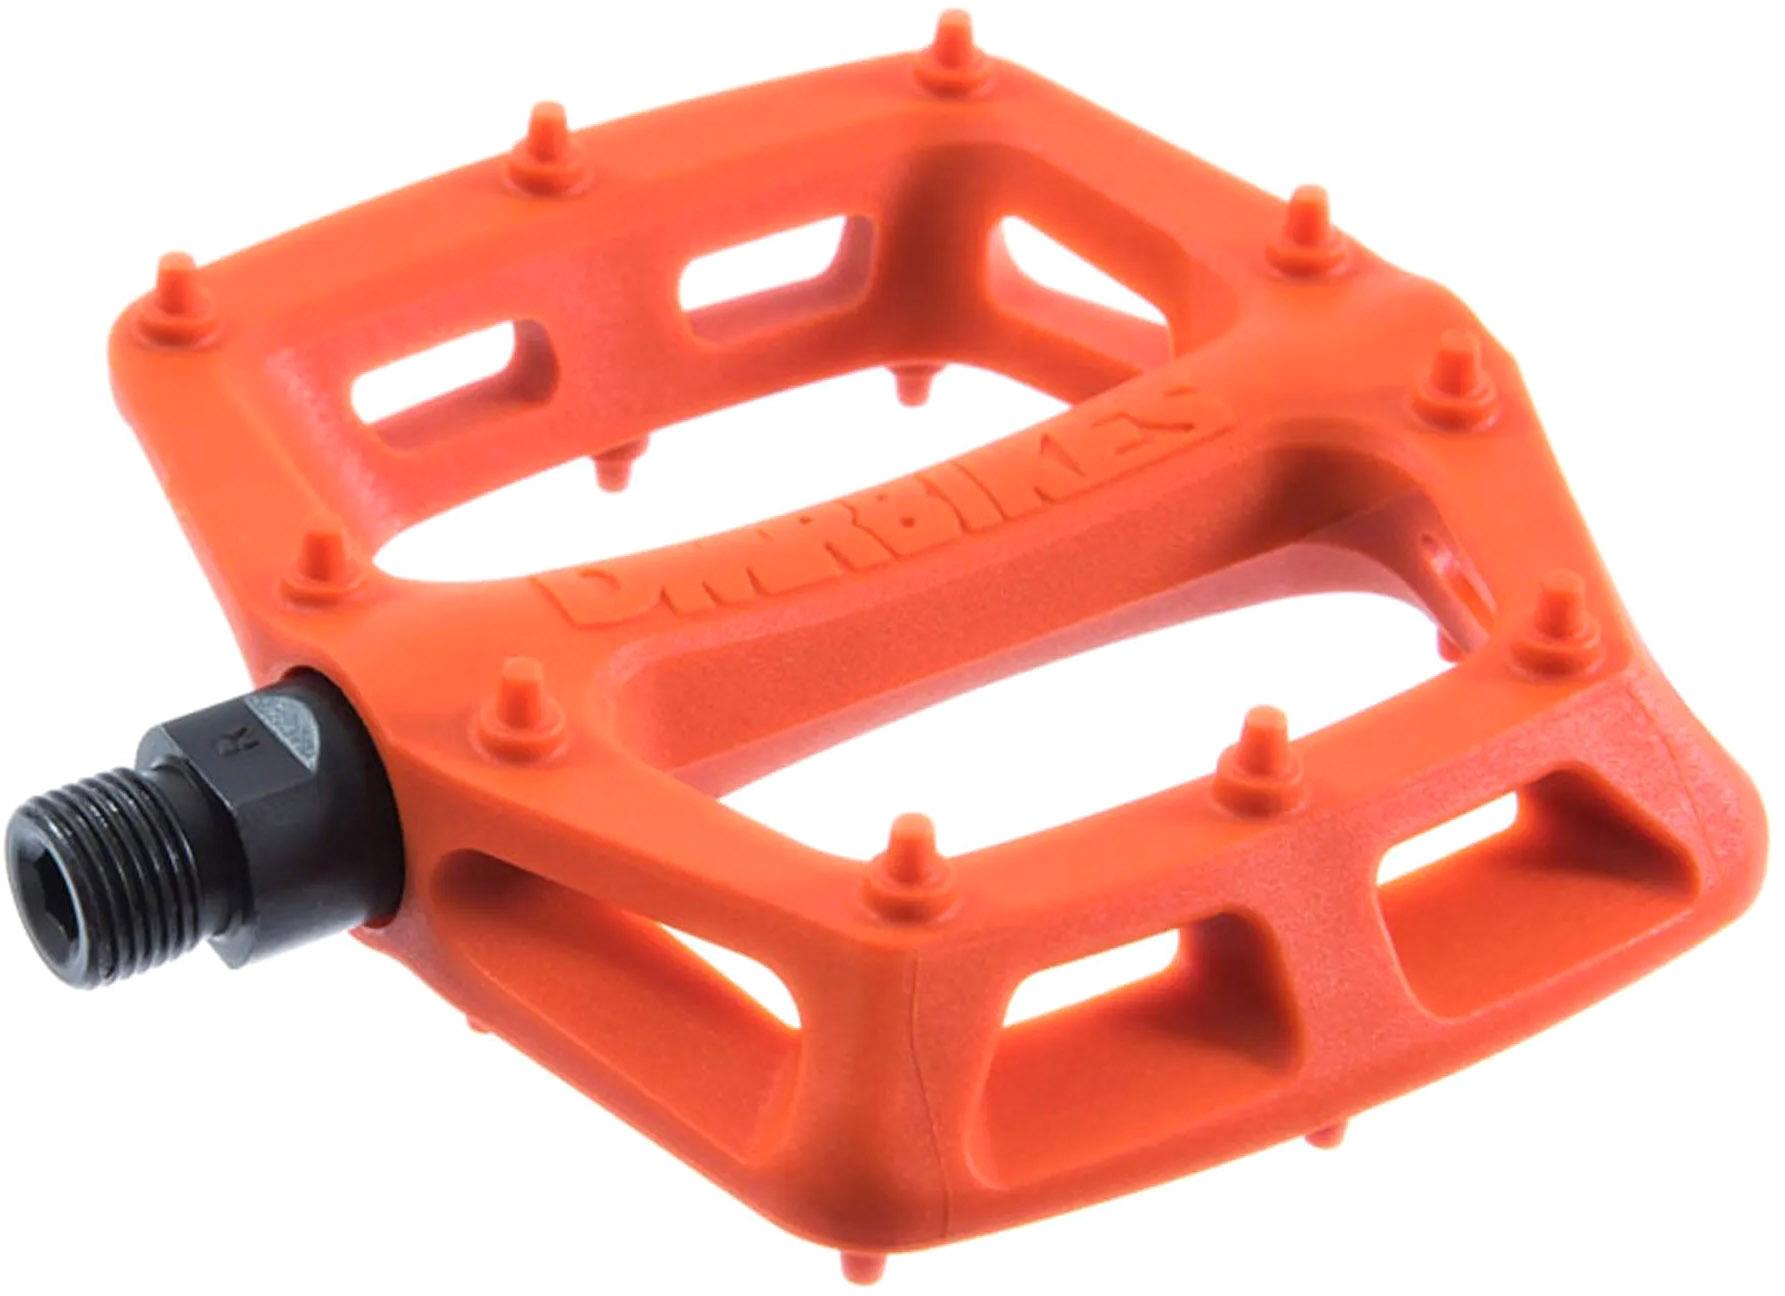 Dmr V6 Plastic Flat Pedals - Orange